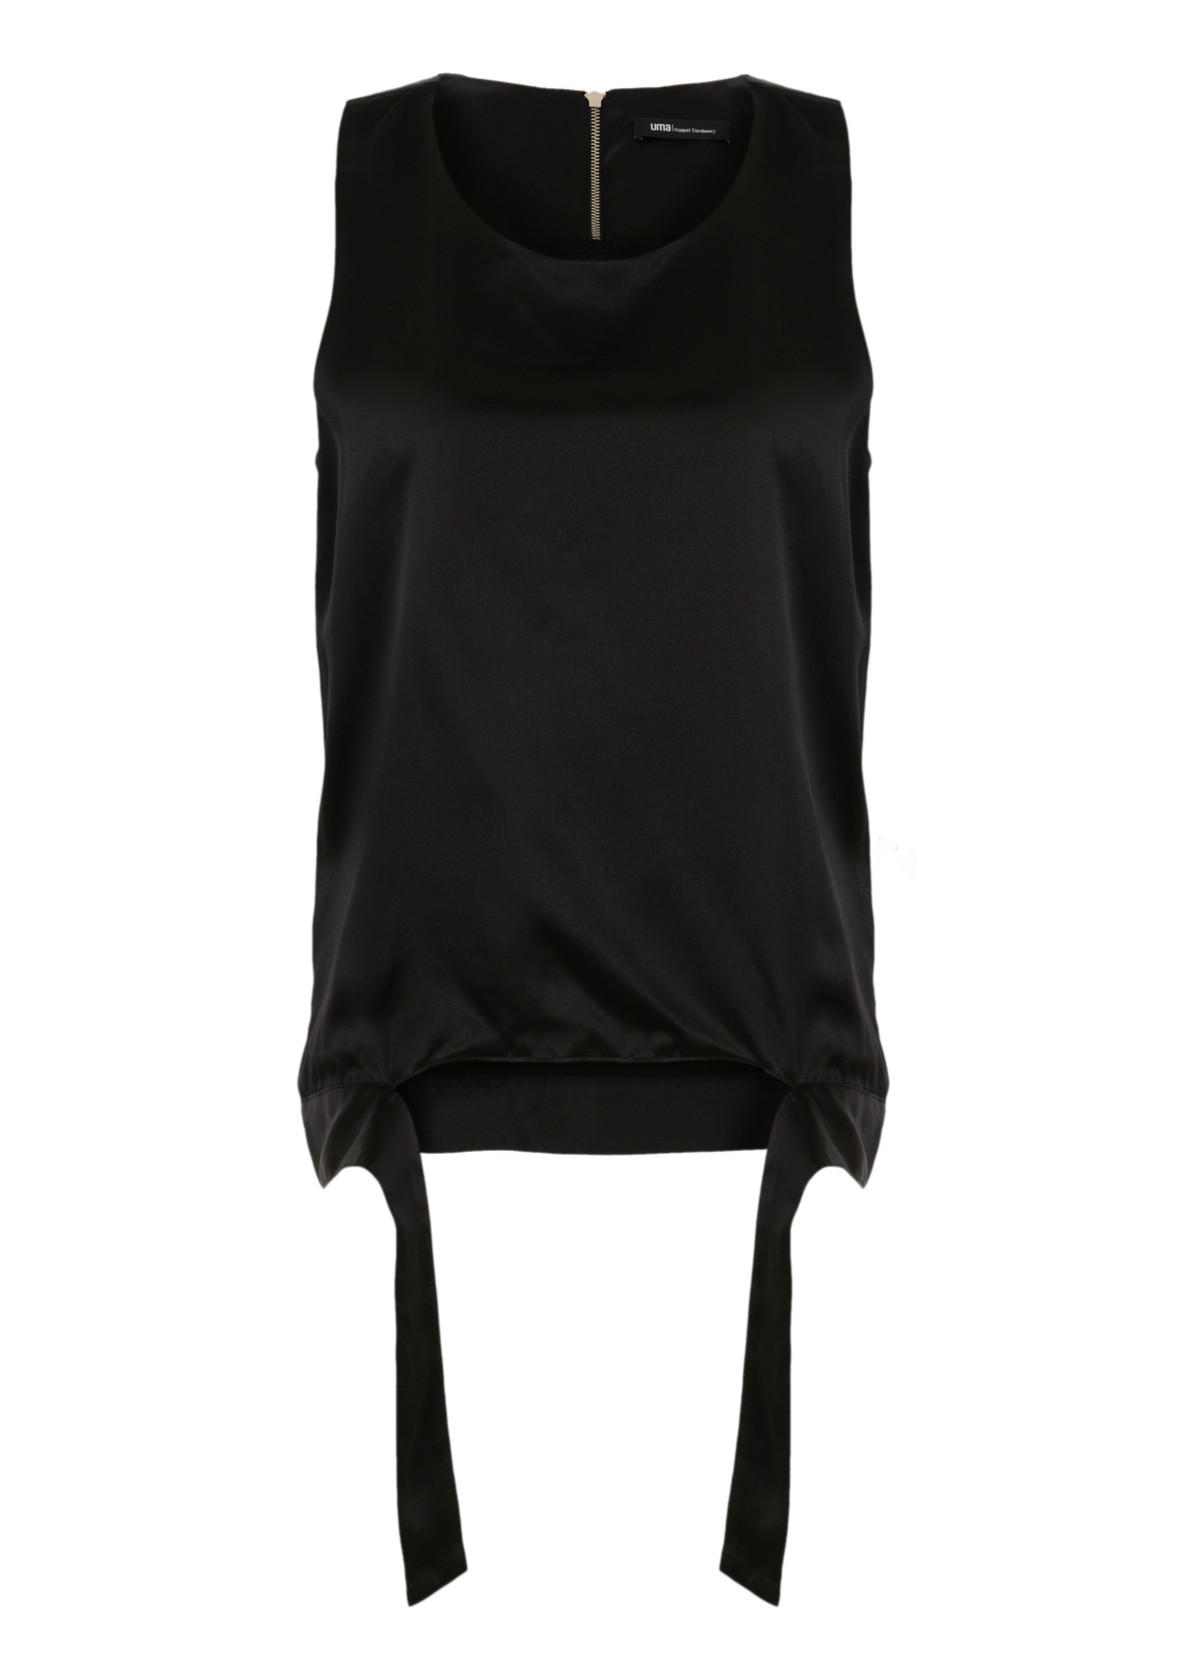 top estilo regata acetinado | silk sleeveless top with detail